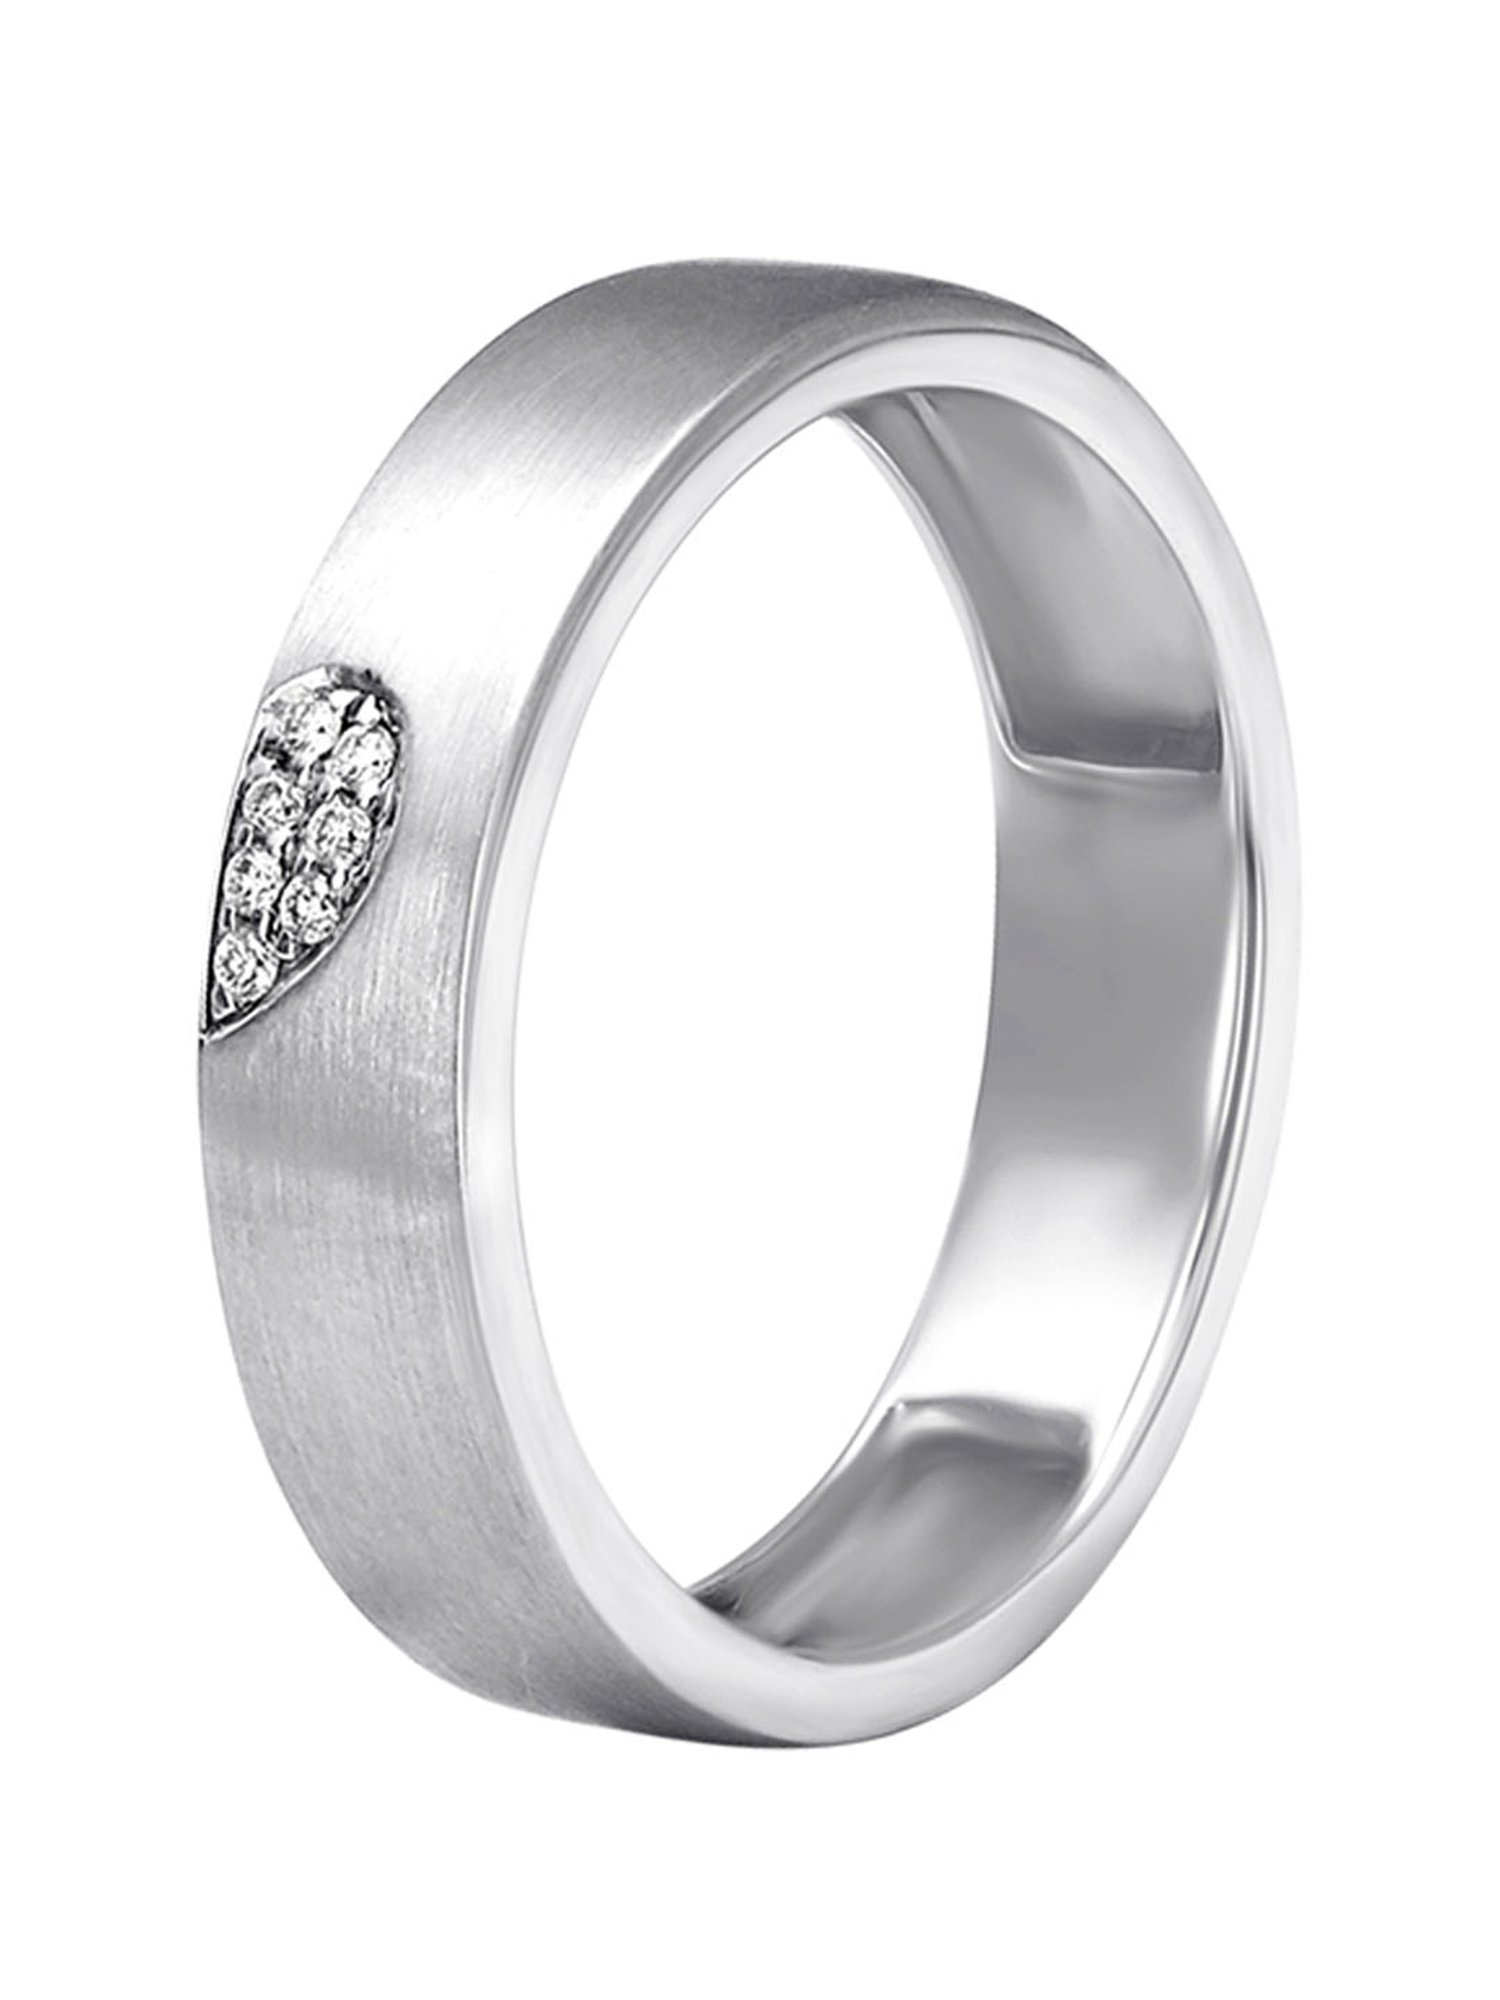 Alluring 950 Pure Platinum And Diamond Finger Ring